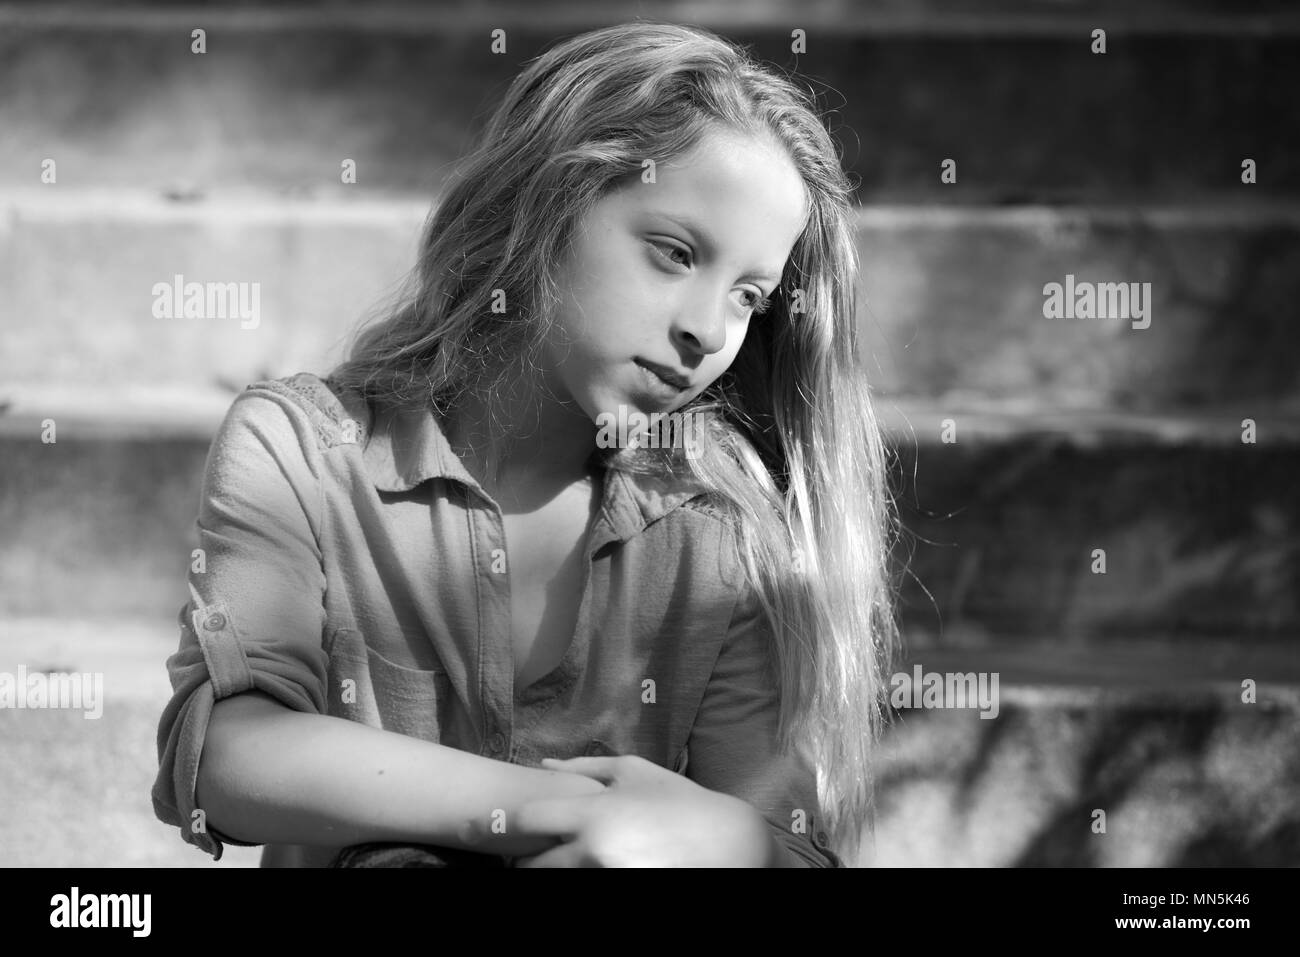 Immagini Stock - Ritratto Di Una Bambina Di Dieci Anni. Età 10 Anni. Studio  Fotografia Su Uno Sfondo Grigio Chiaro.. Image 48337262